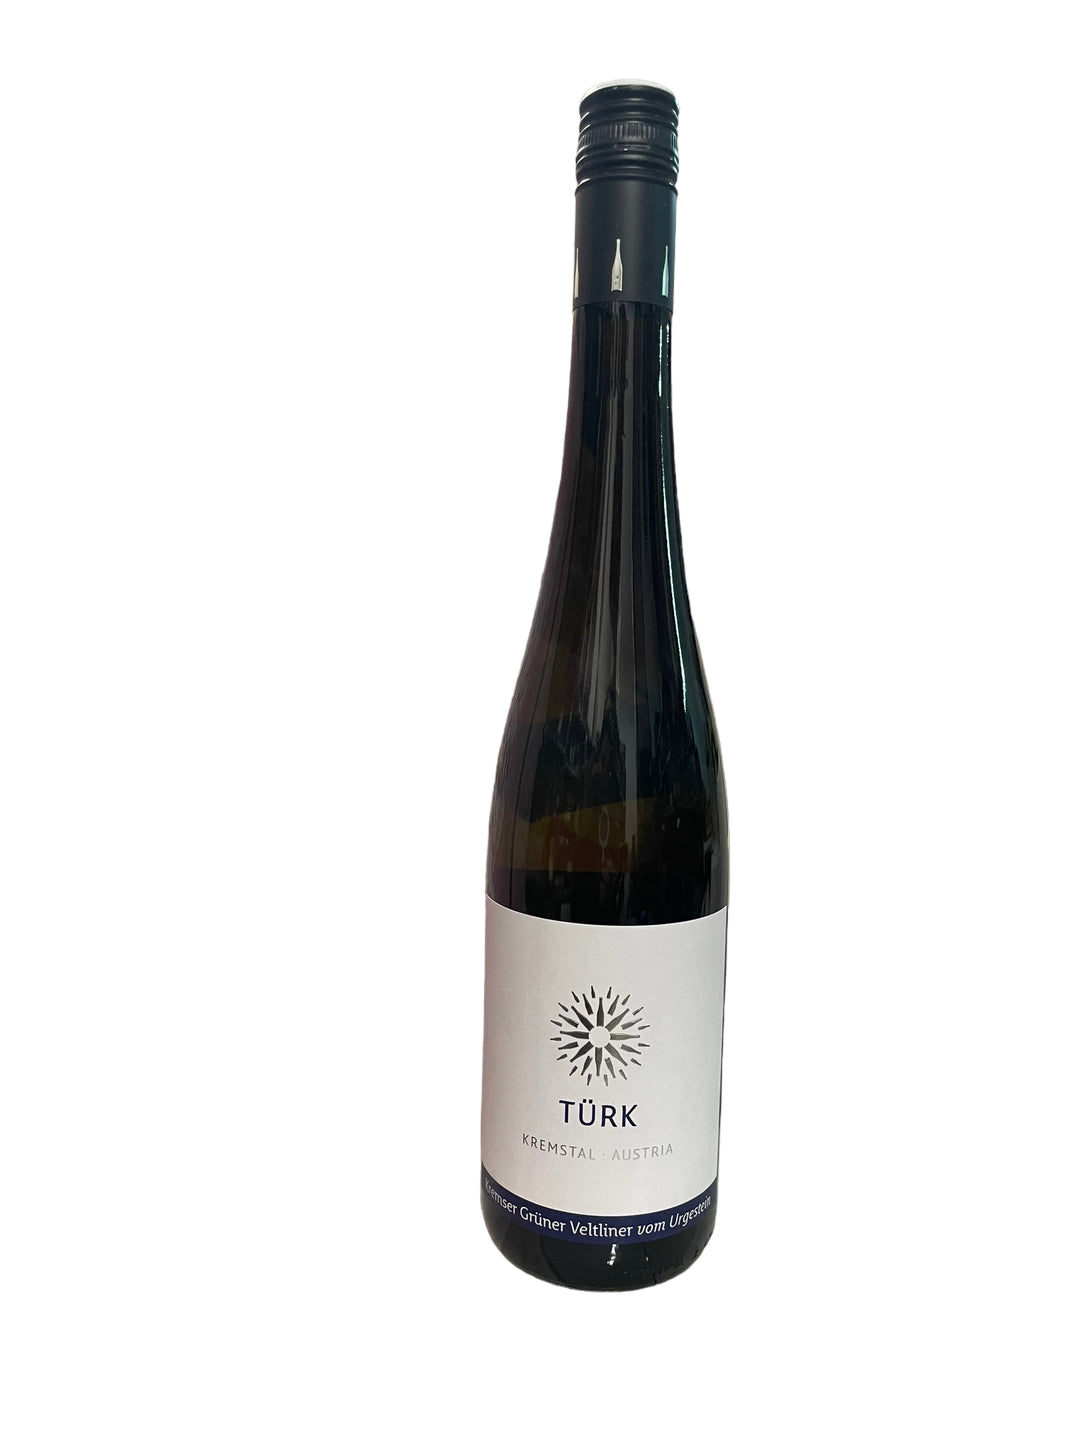 Belo vino Turk Gruner Veltliner 0,75l